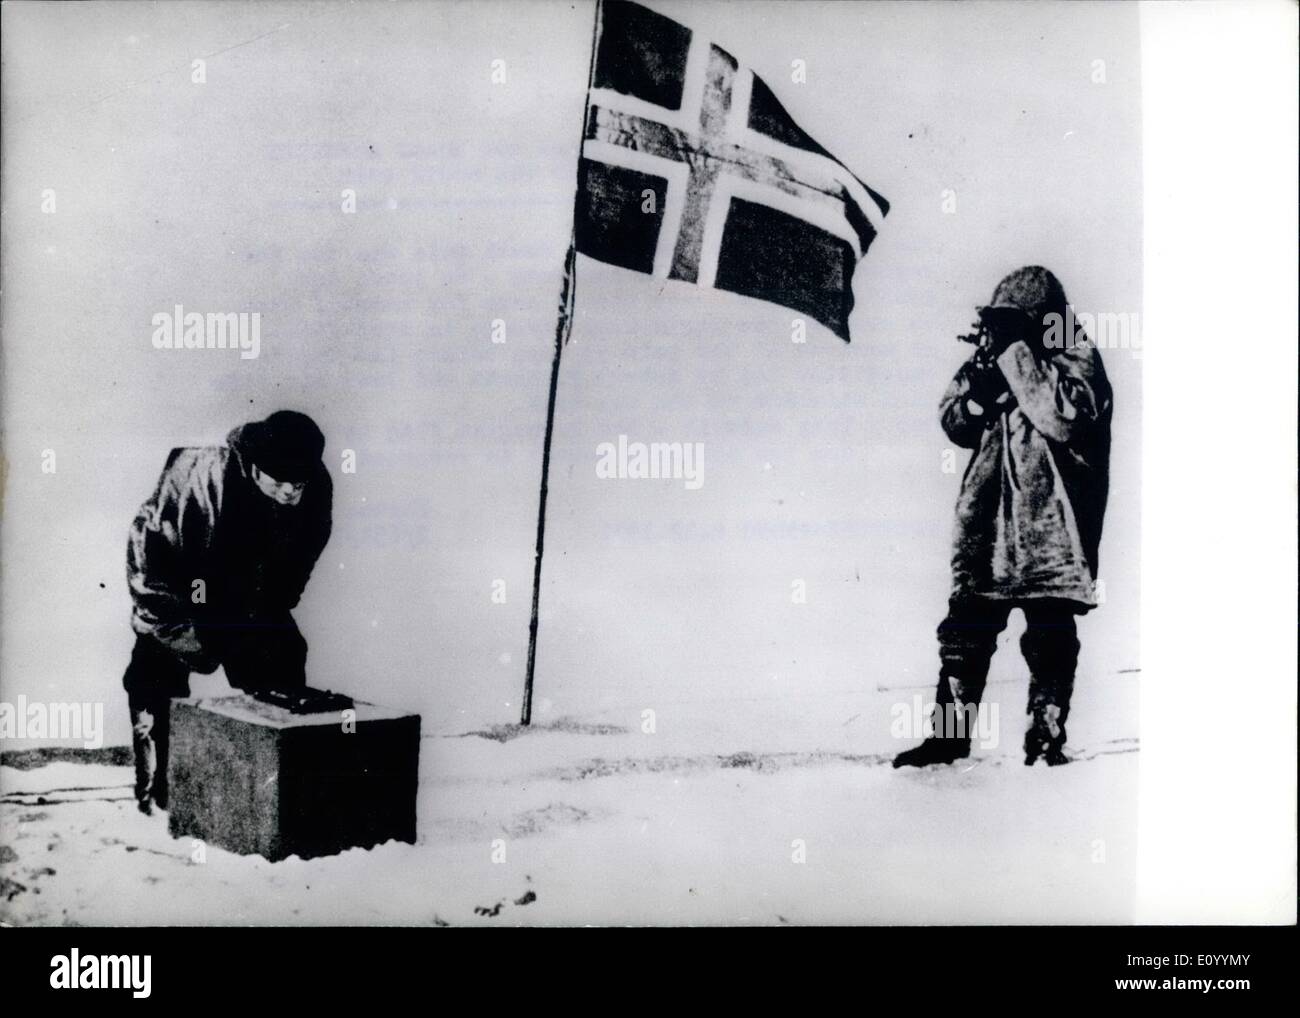 Il 12 Dic. 1971 - 14 dicembre 1971: 60 anni fa Roald Amundse ha raggiunto il Polo Sud: il primo uomo a raggiungere il Polo Sud è stata l'esploratore norvegese Roald Amundsen-60 anni fa! Amundsen aveva già fatto un nome per se stesso quando ha attraversato al passaggio a nord-ovest nel 1903-1906. È arrivato al palo 53 giorni prima della spedizione inglese guidato da Robert F. Scott che loat la sua vita in una bufera di neve sulla via del ritorno. Mostra fotografica. Loro hanno reso la bandiera norvegese è issato e il momento storico è registrata su pellicola. Foto Stock